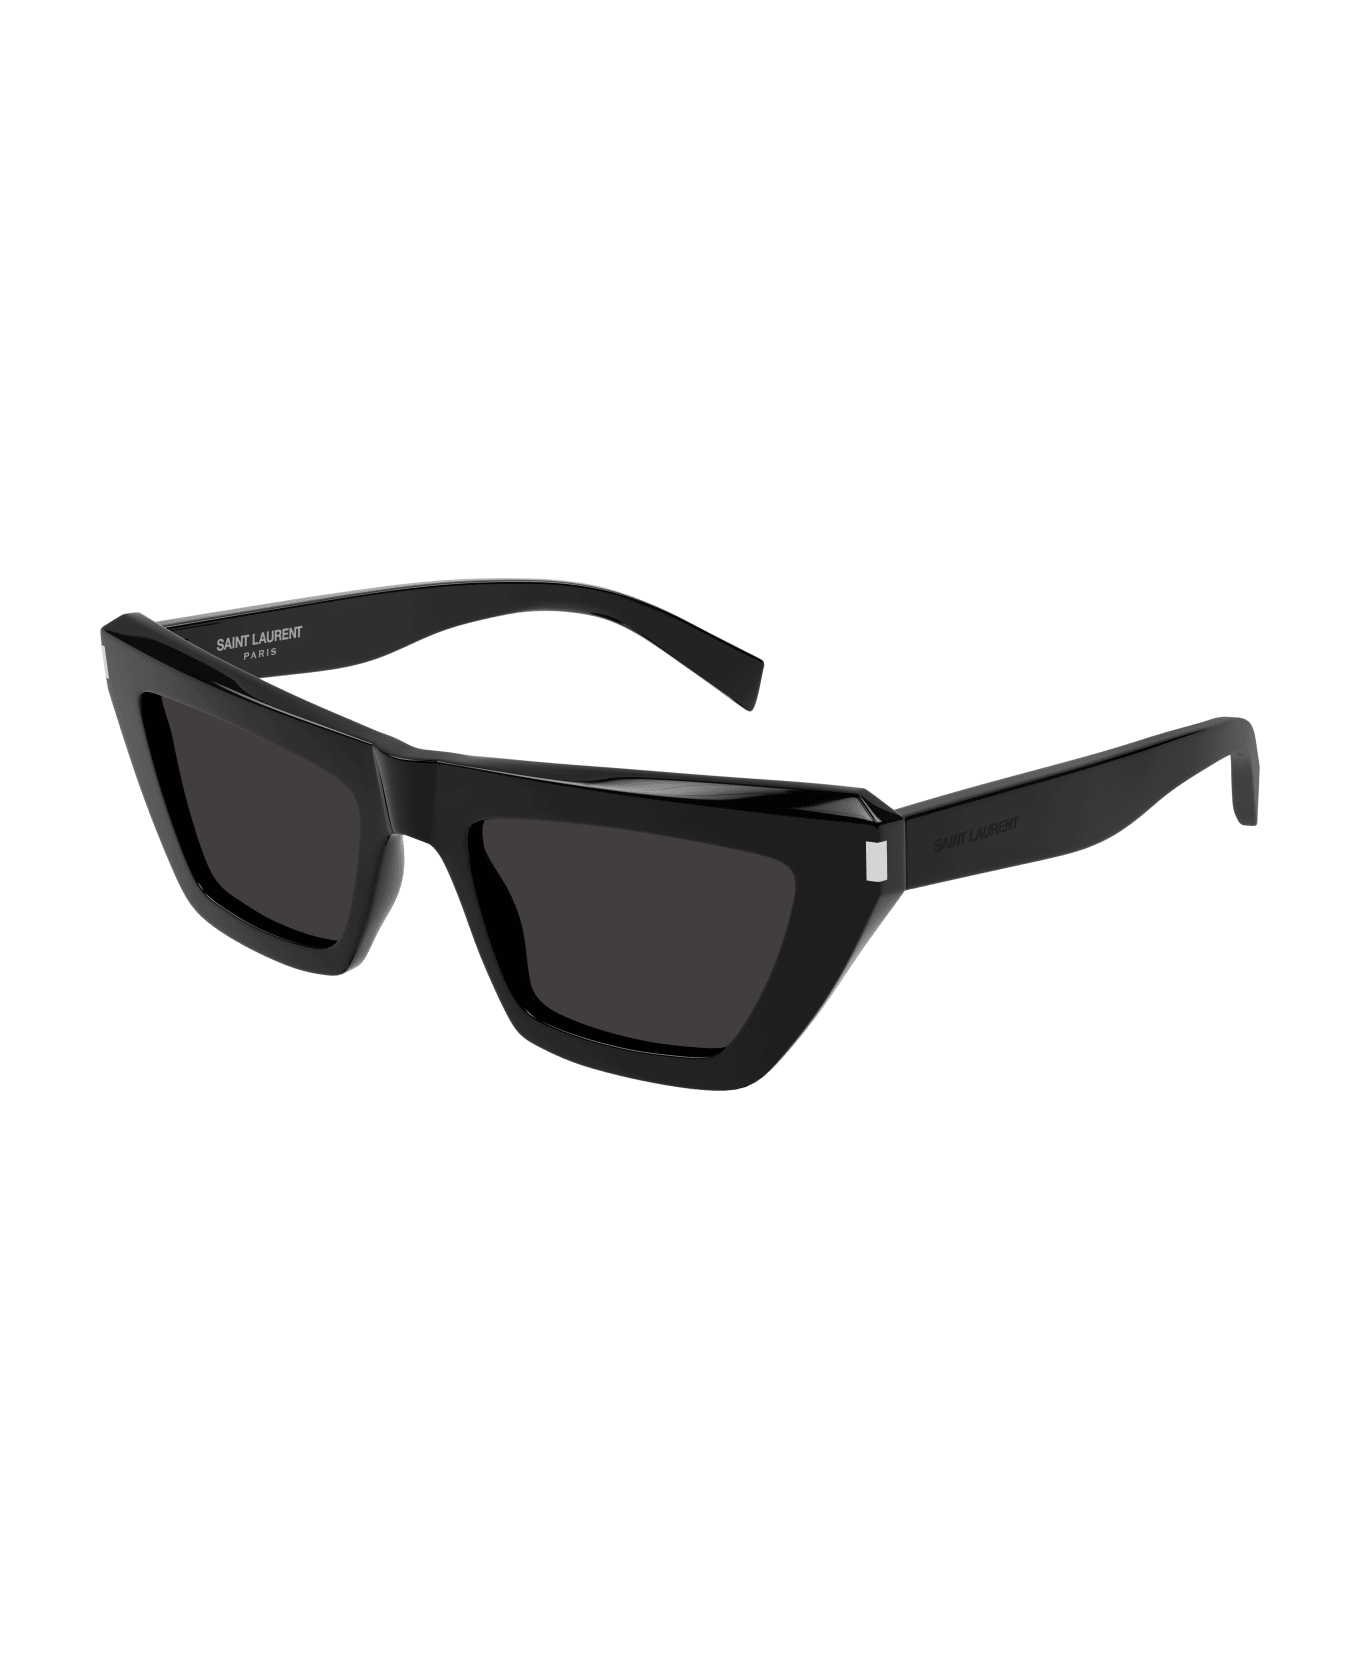 Saint Laurent Eyewear Sl 467 Sunglasses - 001 black black black サングラス